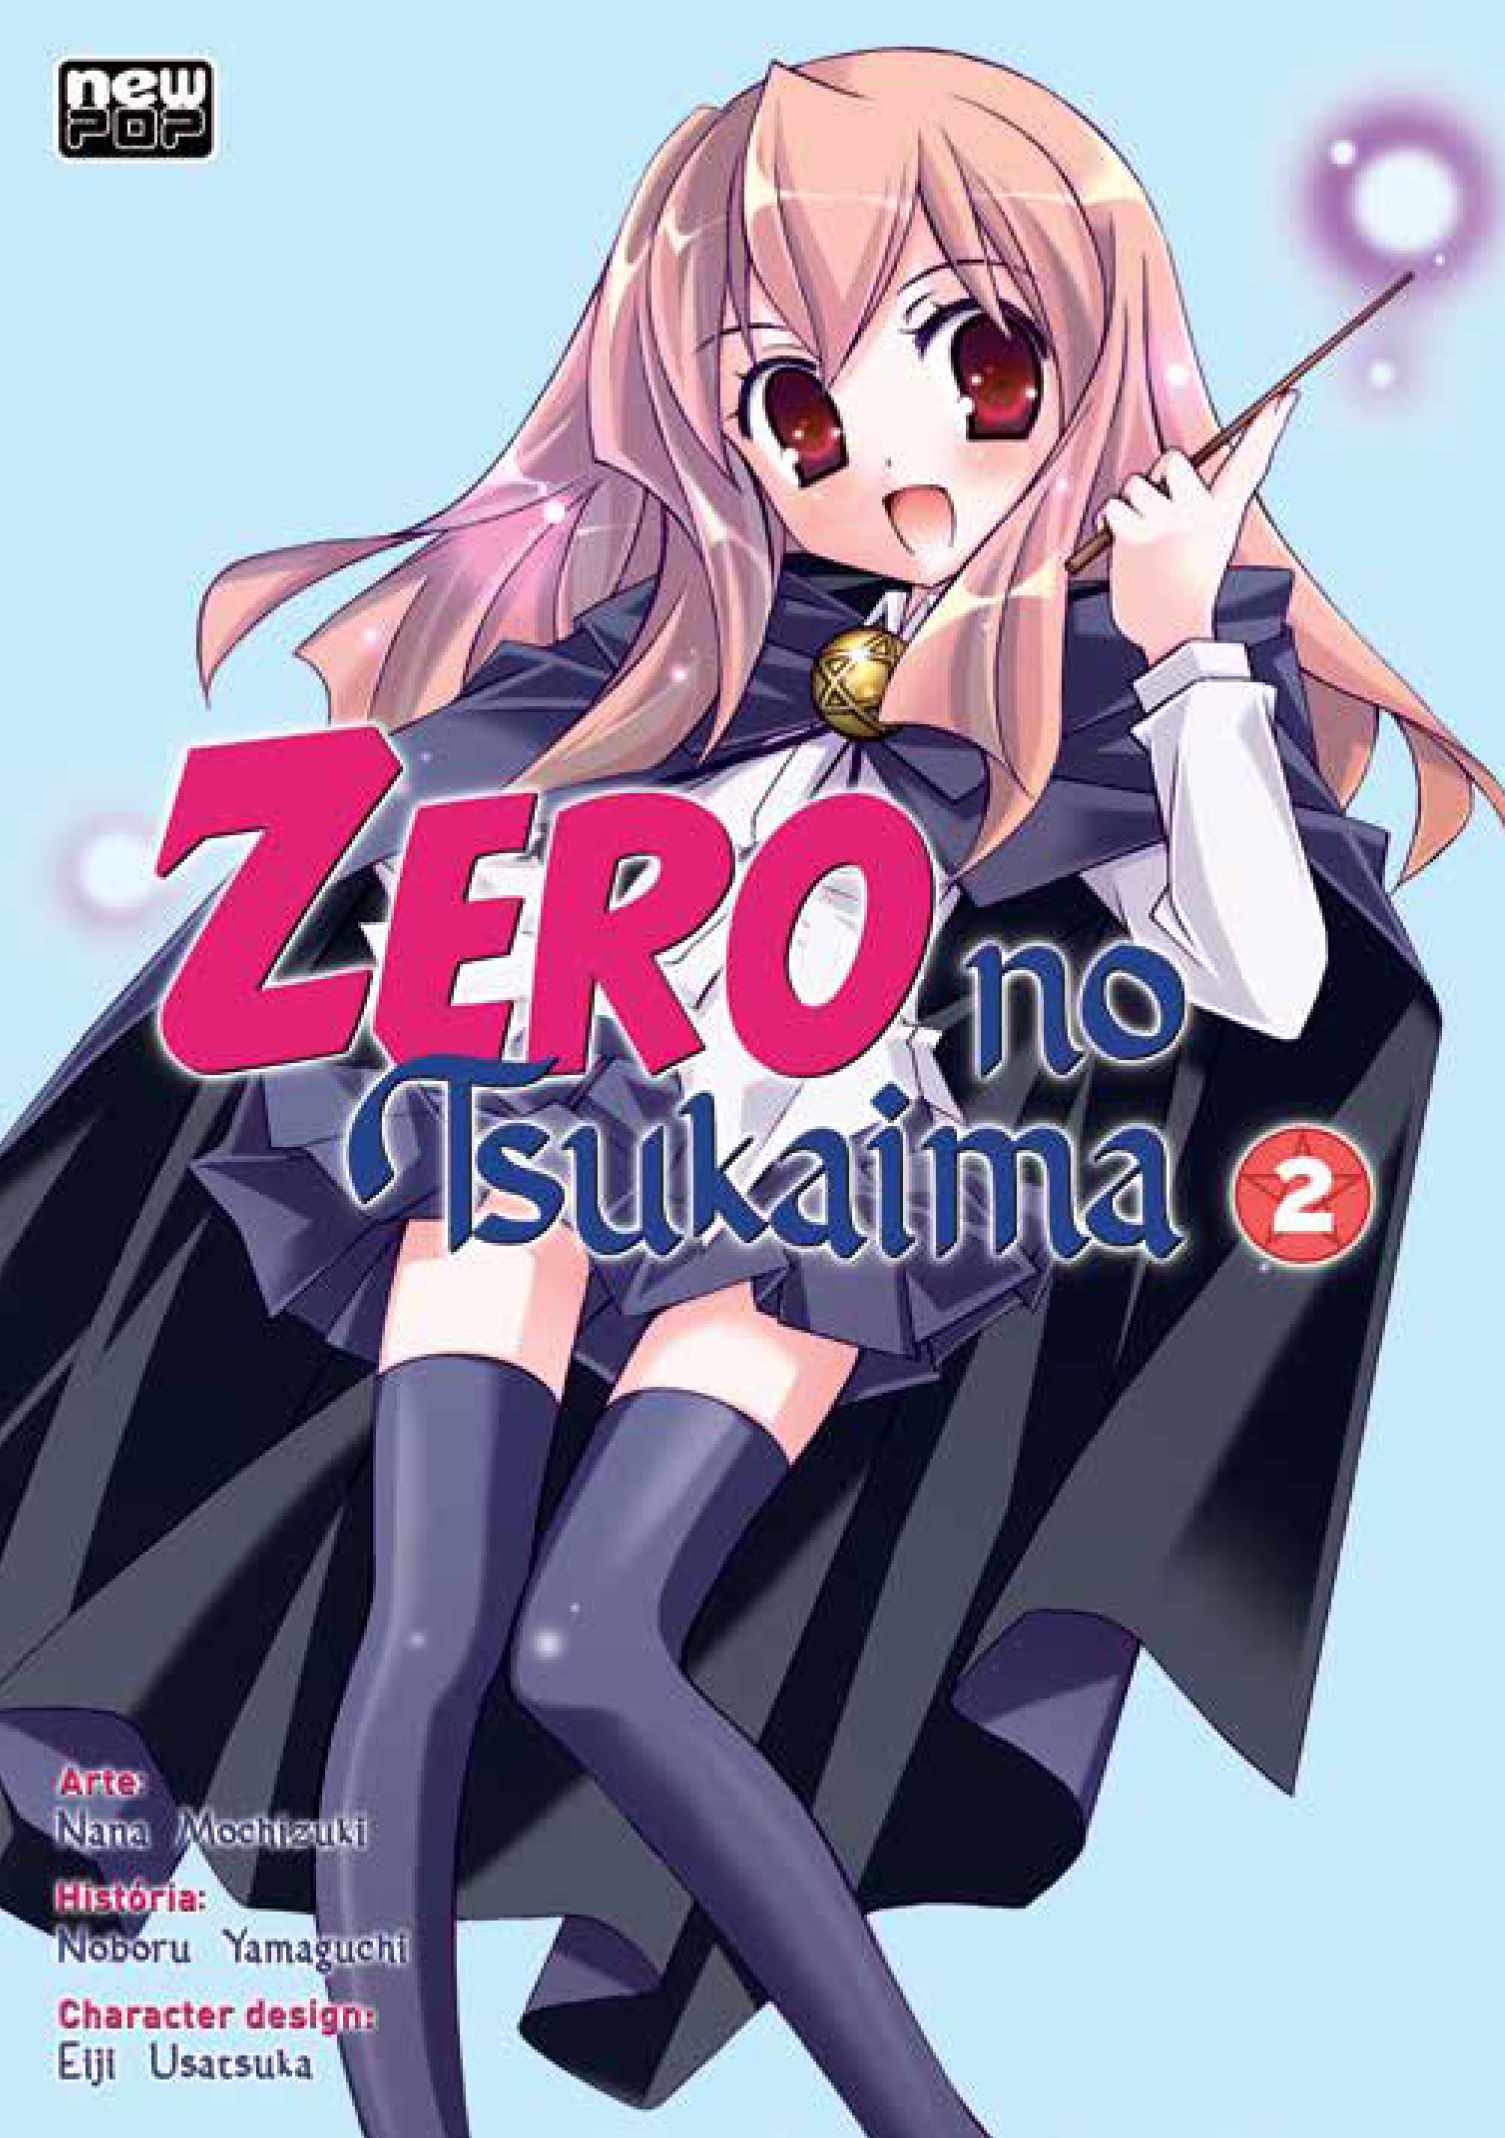 Zero No Tsukaima Opening 1 